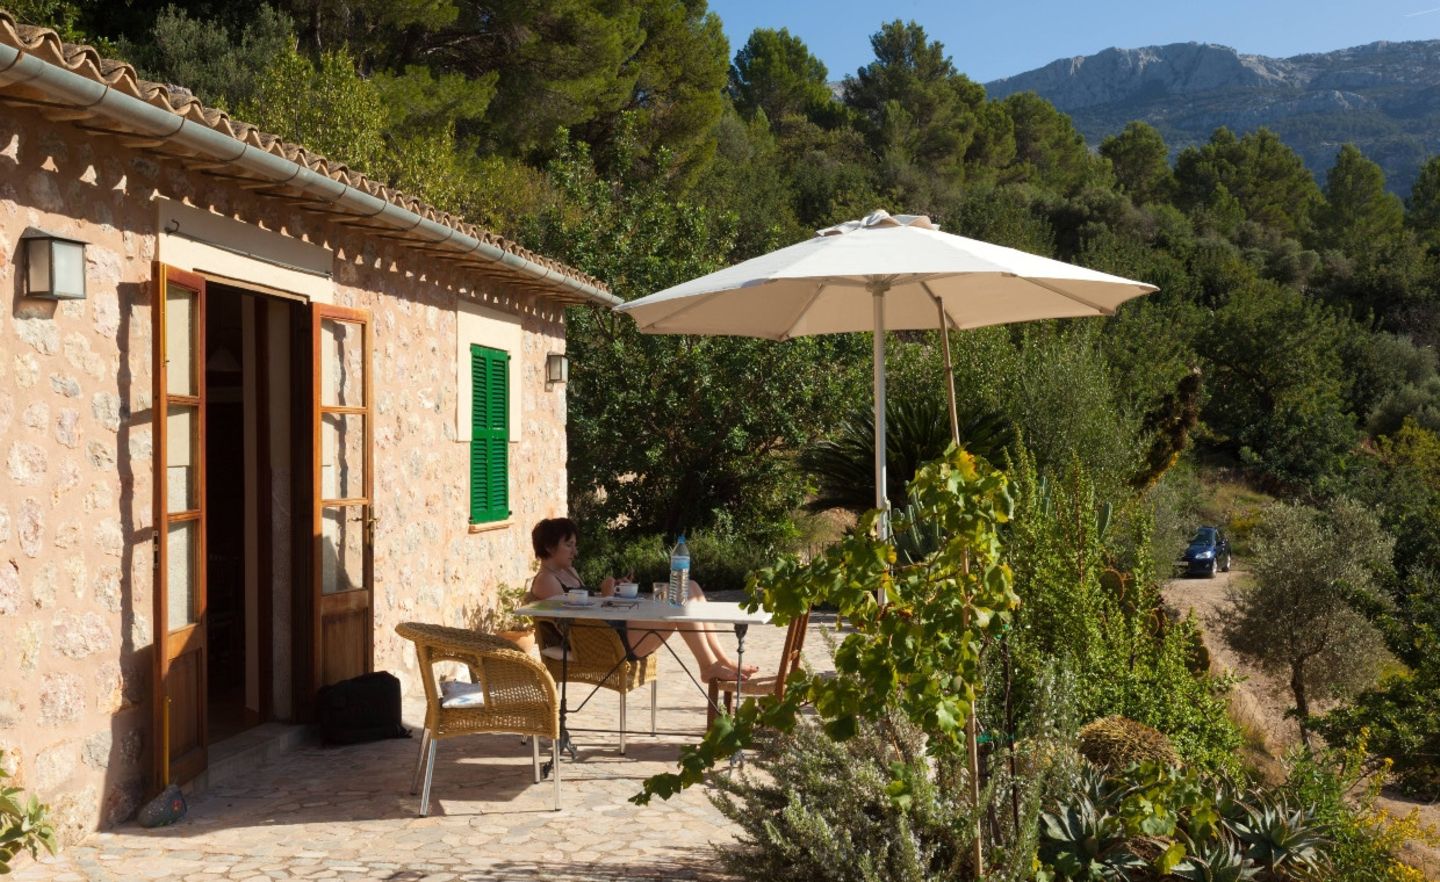 Wer auf Mallorca ein Ferienhaus sucht, sollte einen großen Finanzpuffer einplanen.